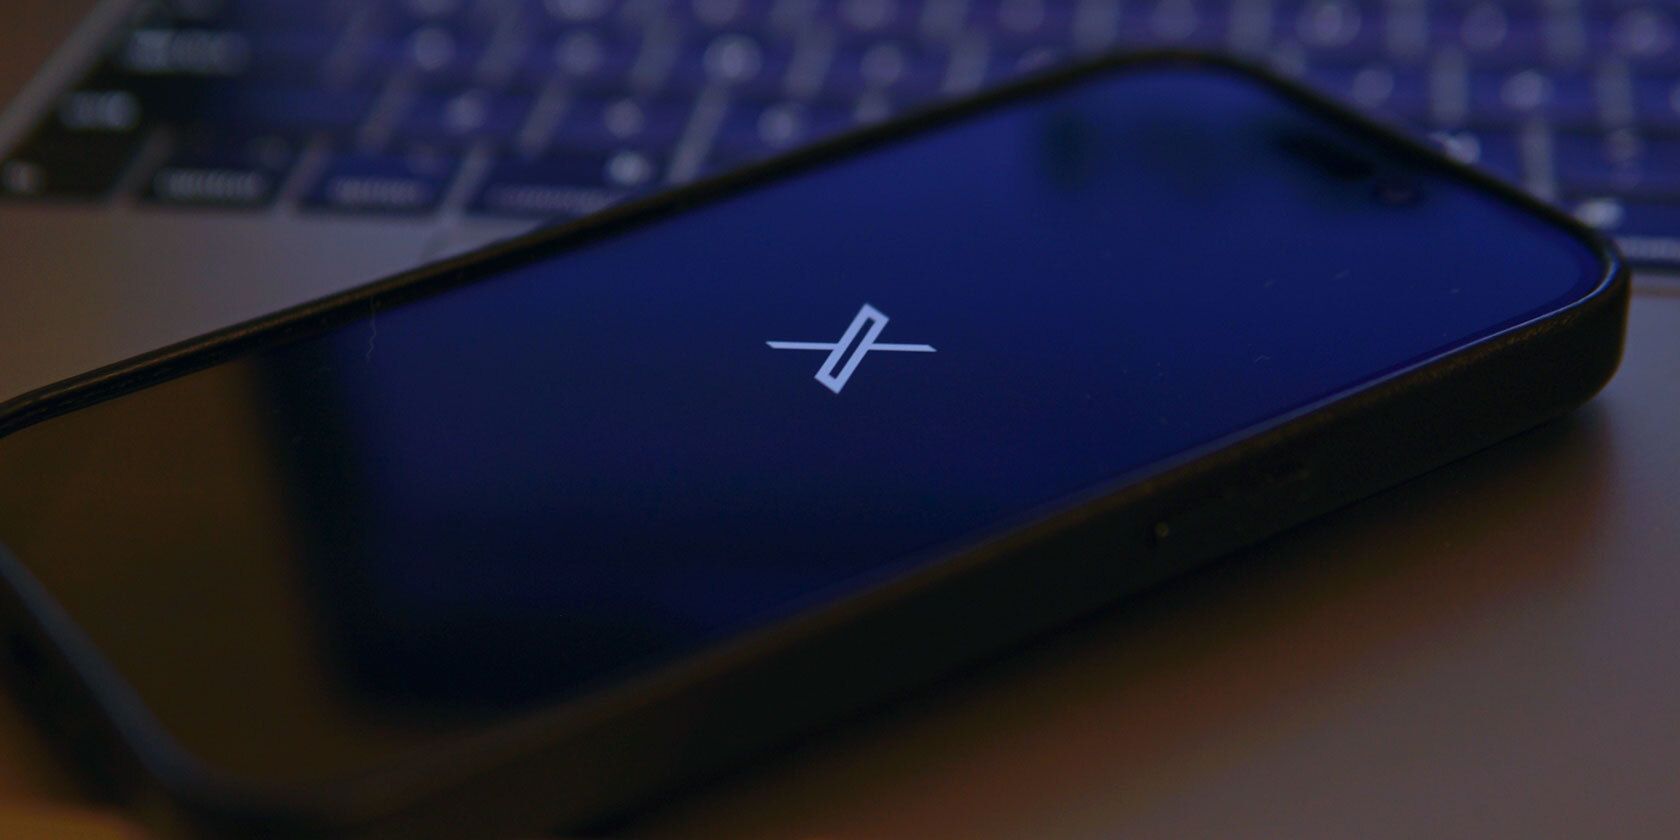 x twitter logo on an iphone